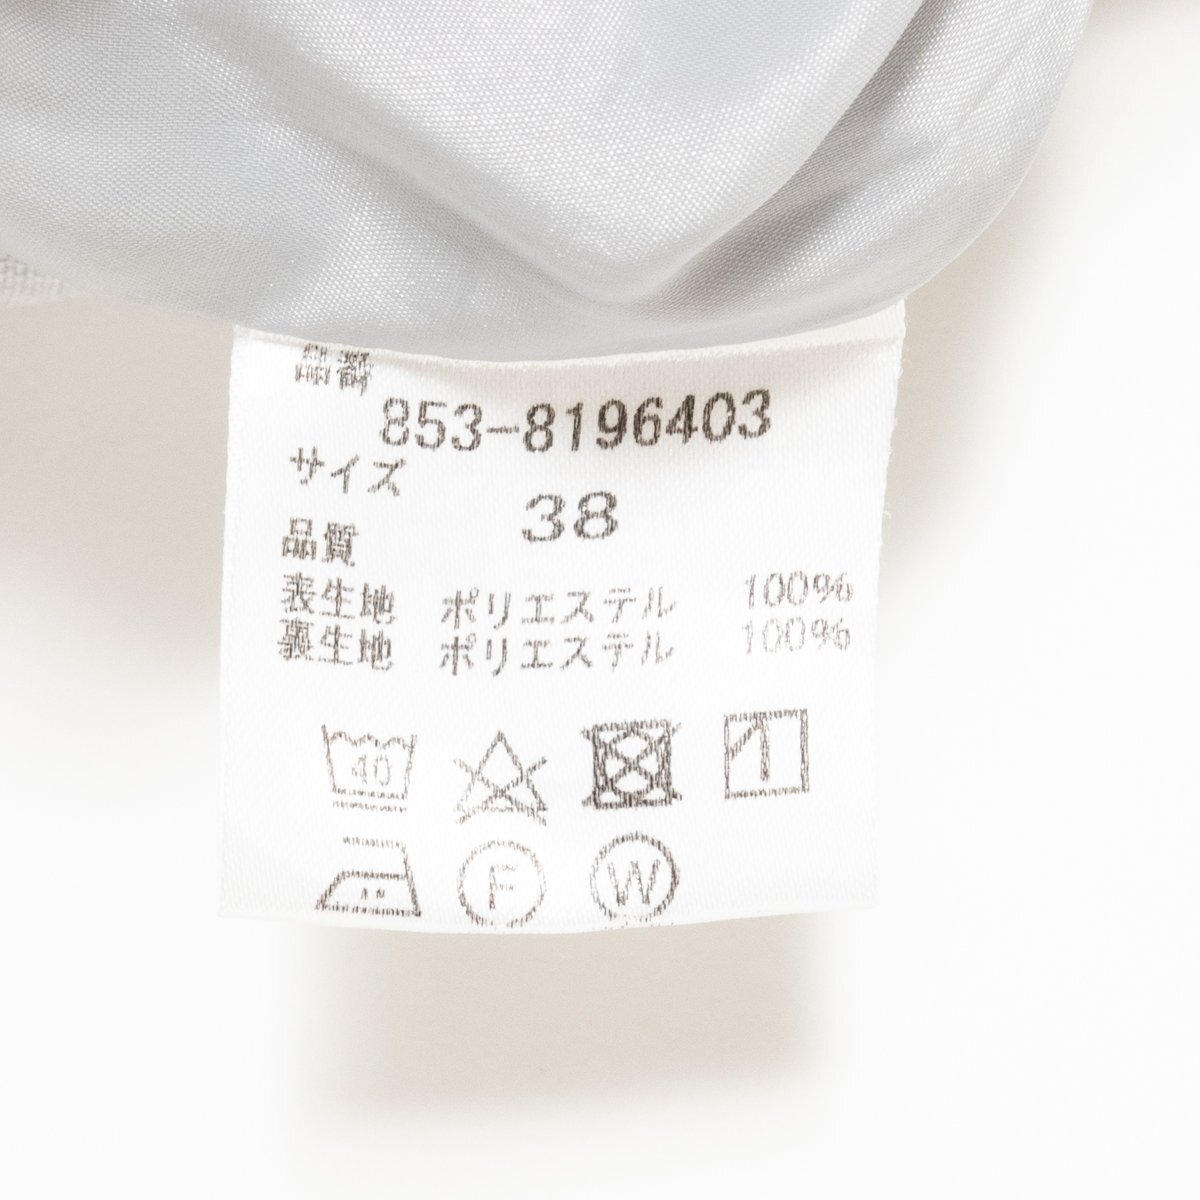 22 OCTOBRE юбка Van du- Okt -bru низ красивый . серый серия талия лента красивый . простой колено внизу длина подкладка есть поли 38